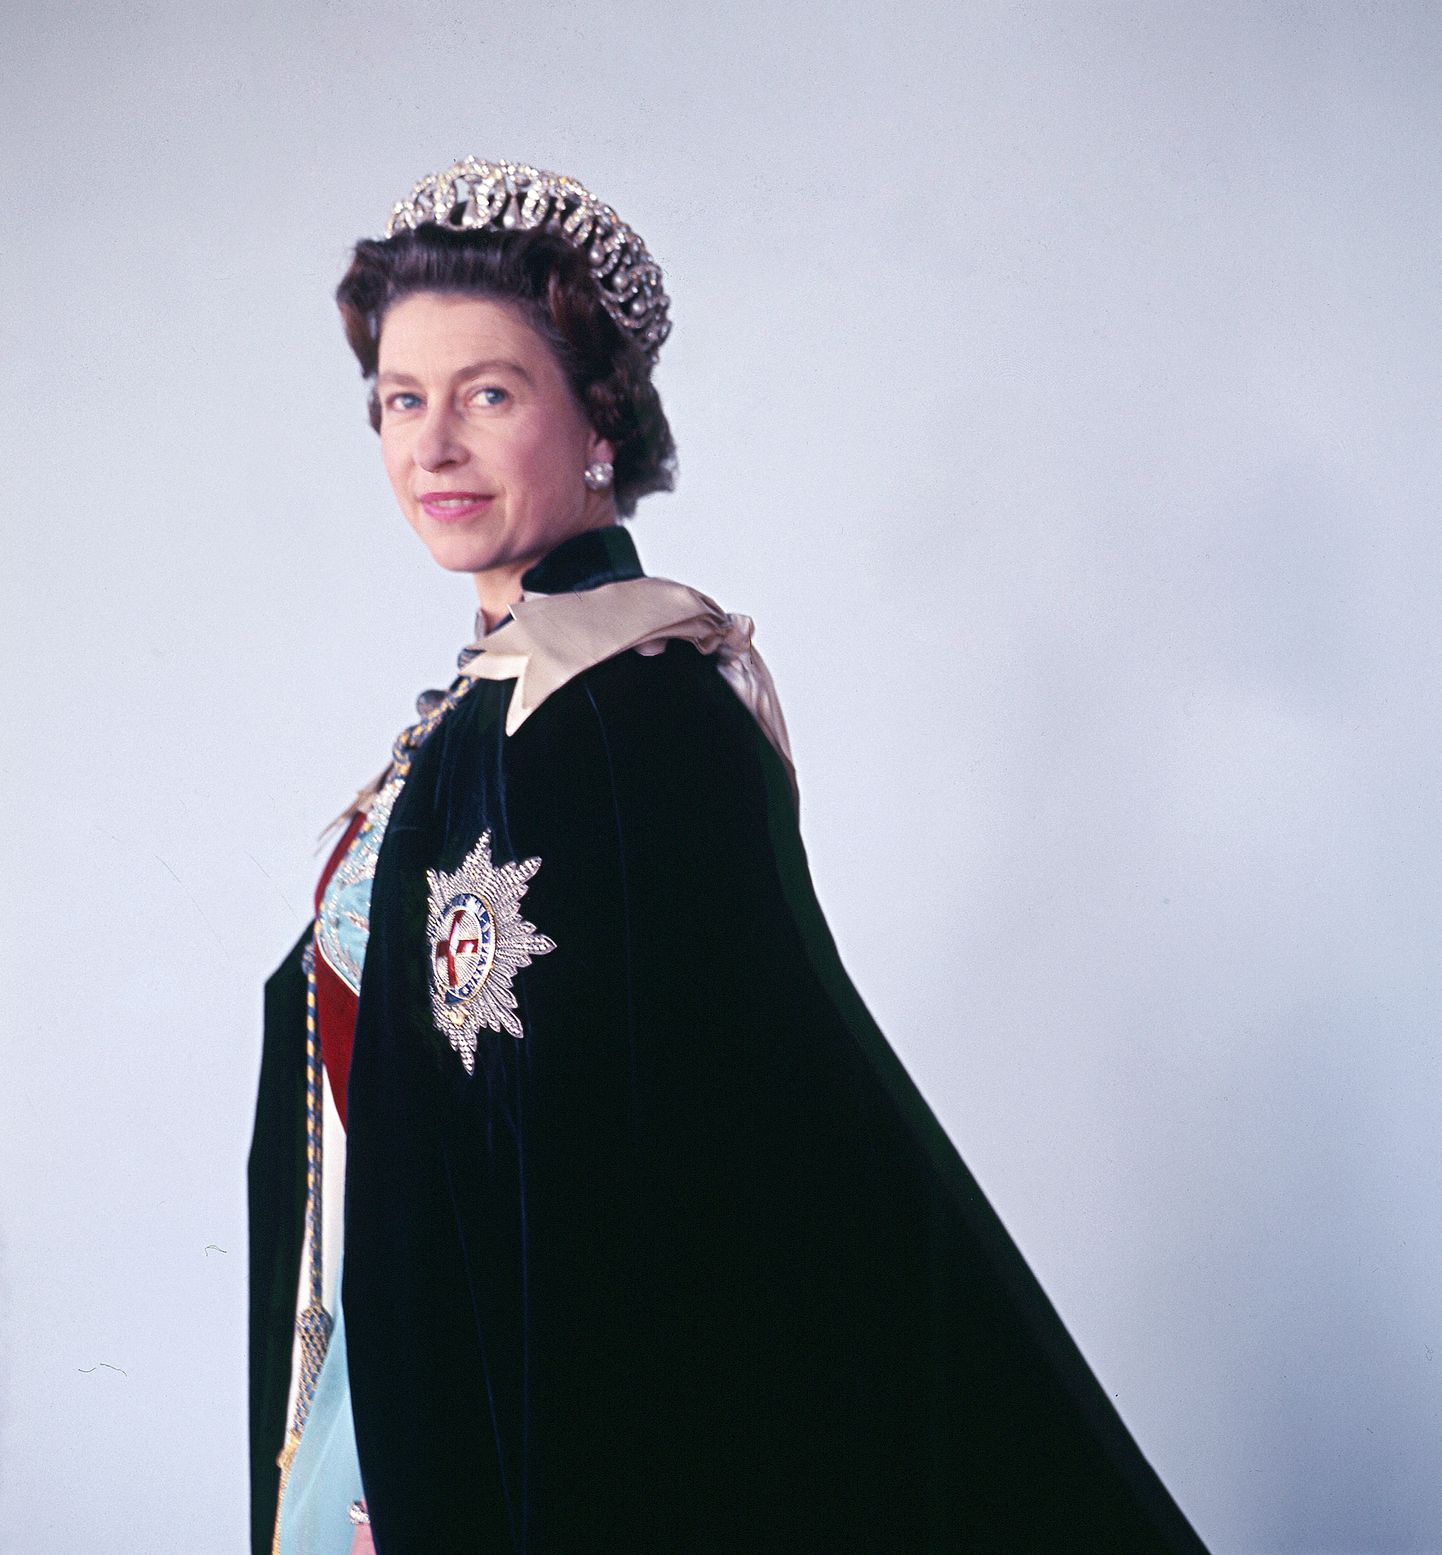 Kuninganna Elizabeth II 16. oktoobril 1968